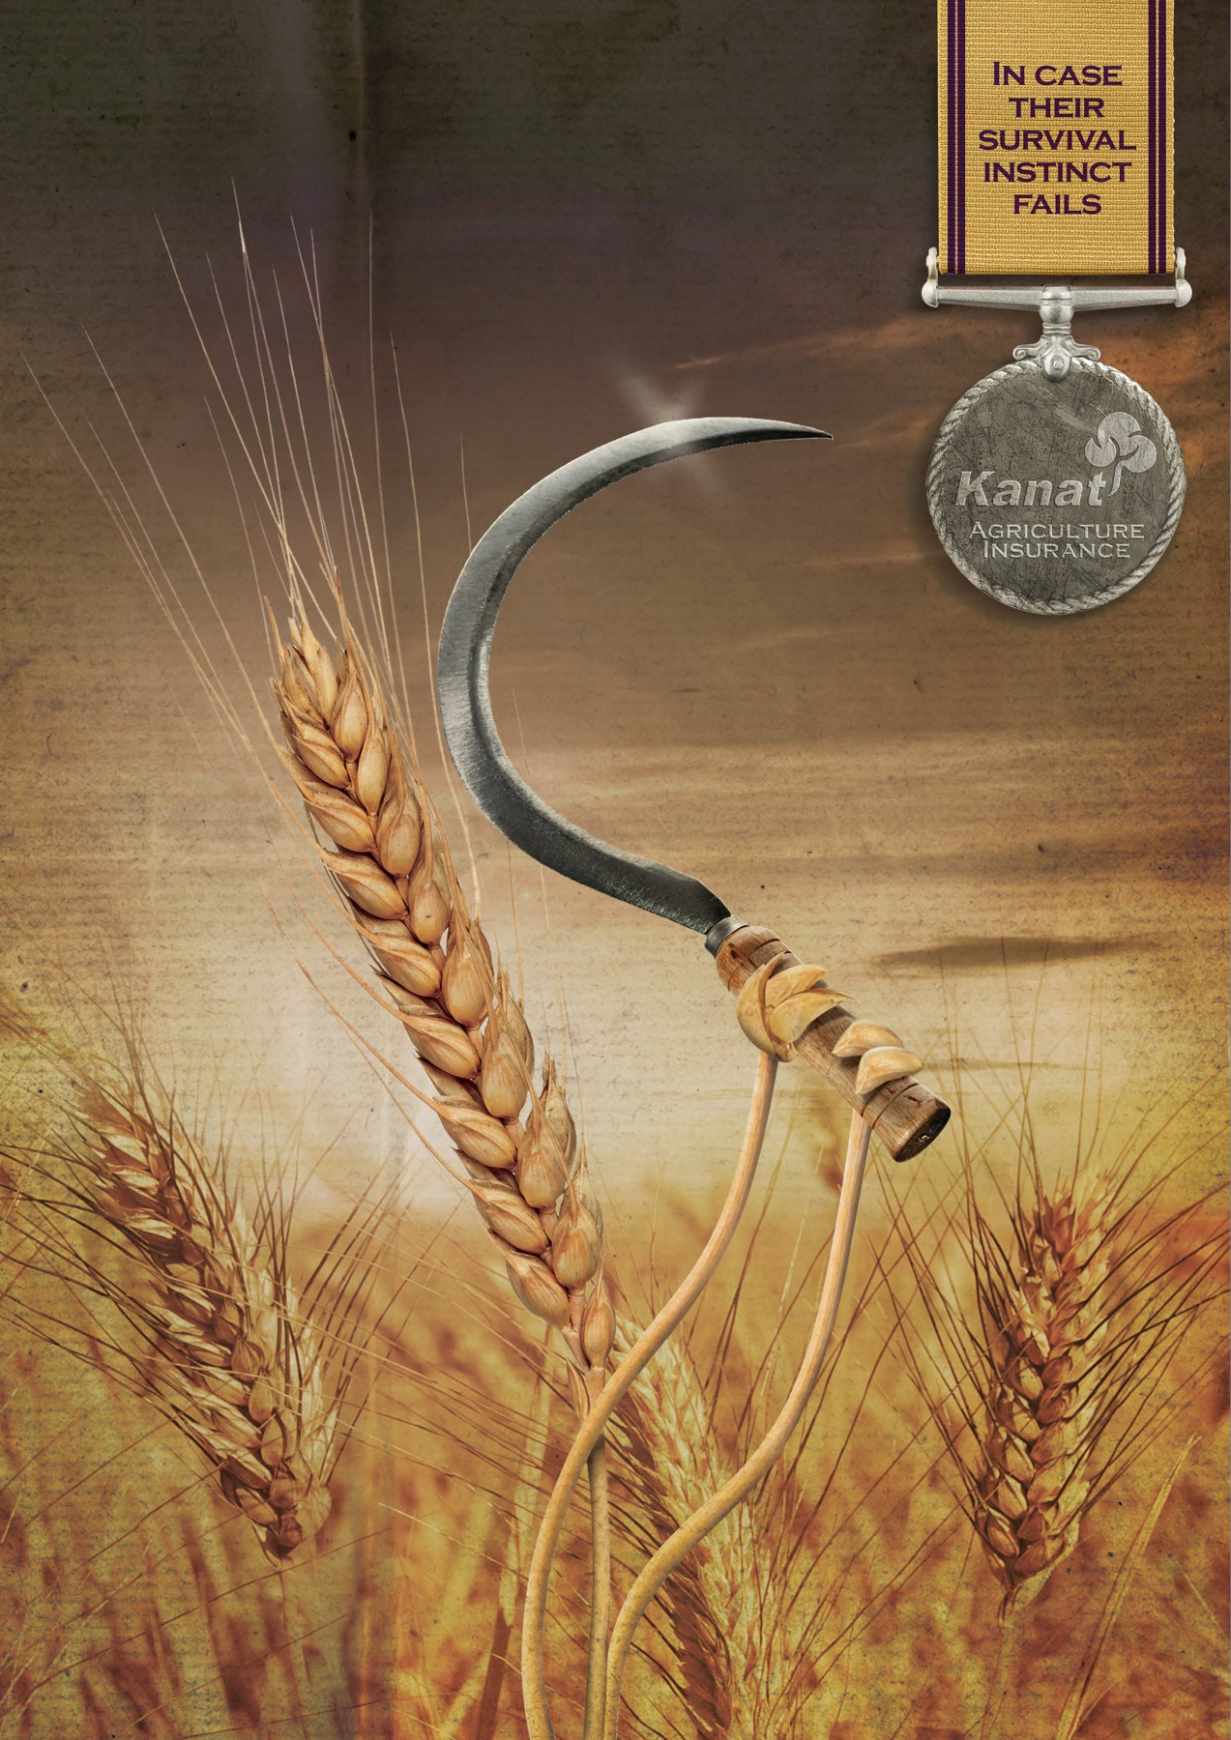 Kanat 农业保险平面创意广告设计小麦篇-上海尚略广告设计公司平面广告分享